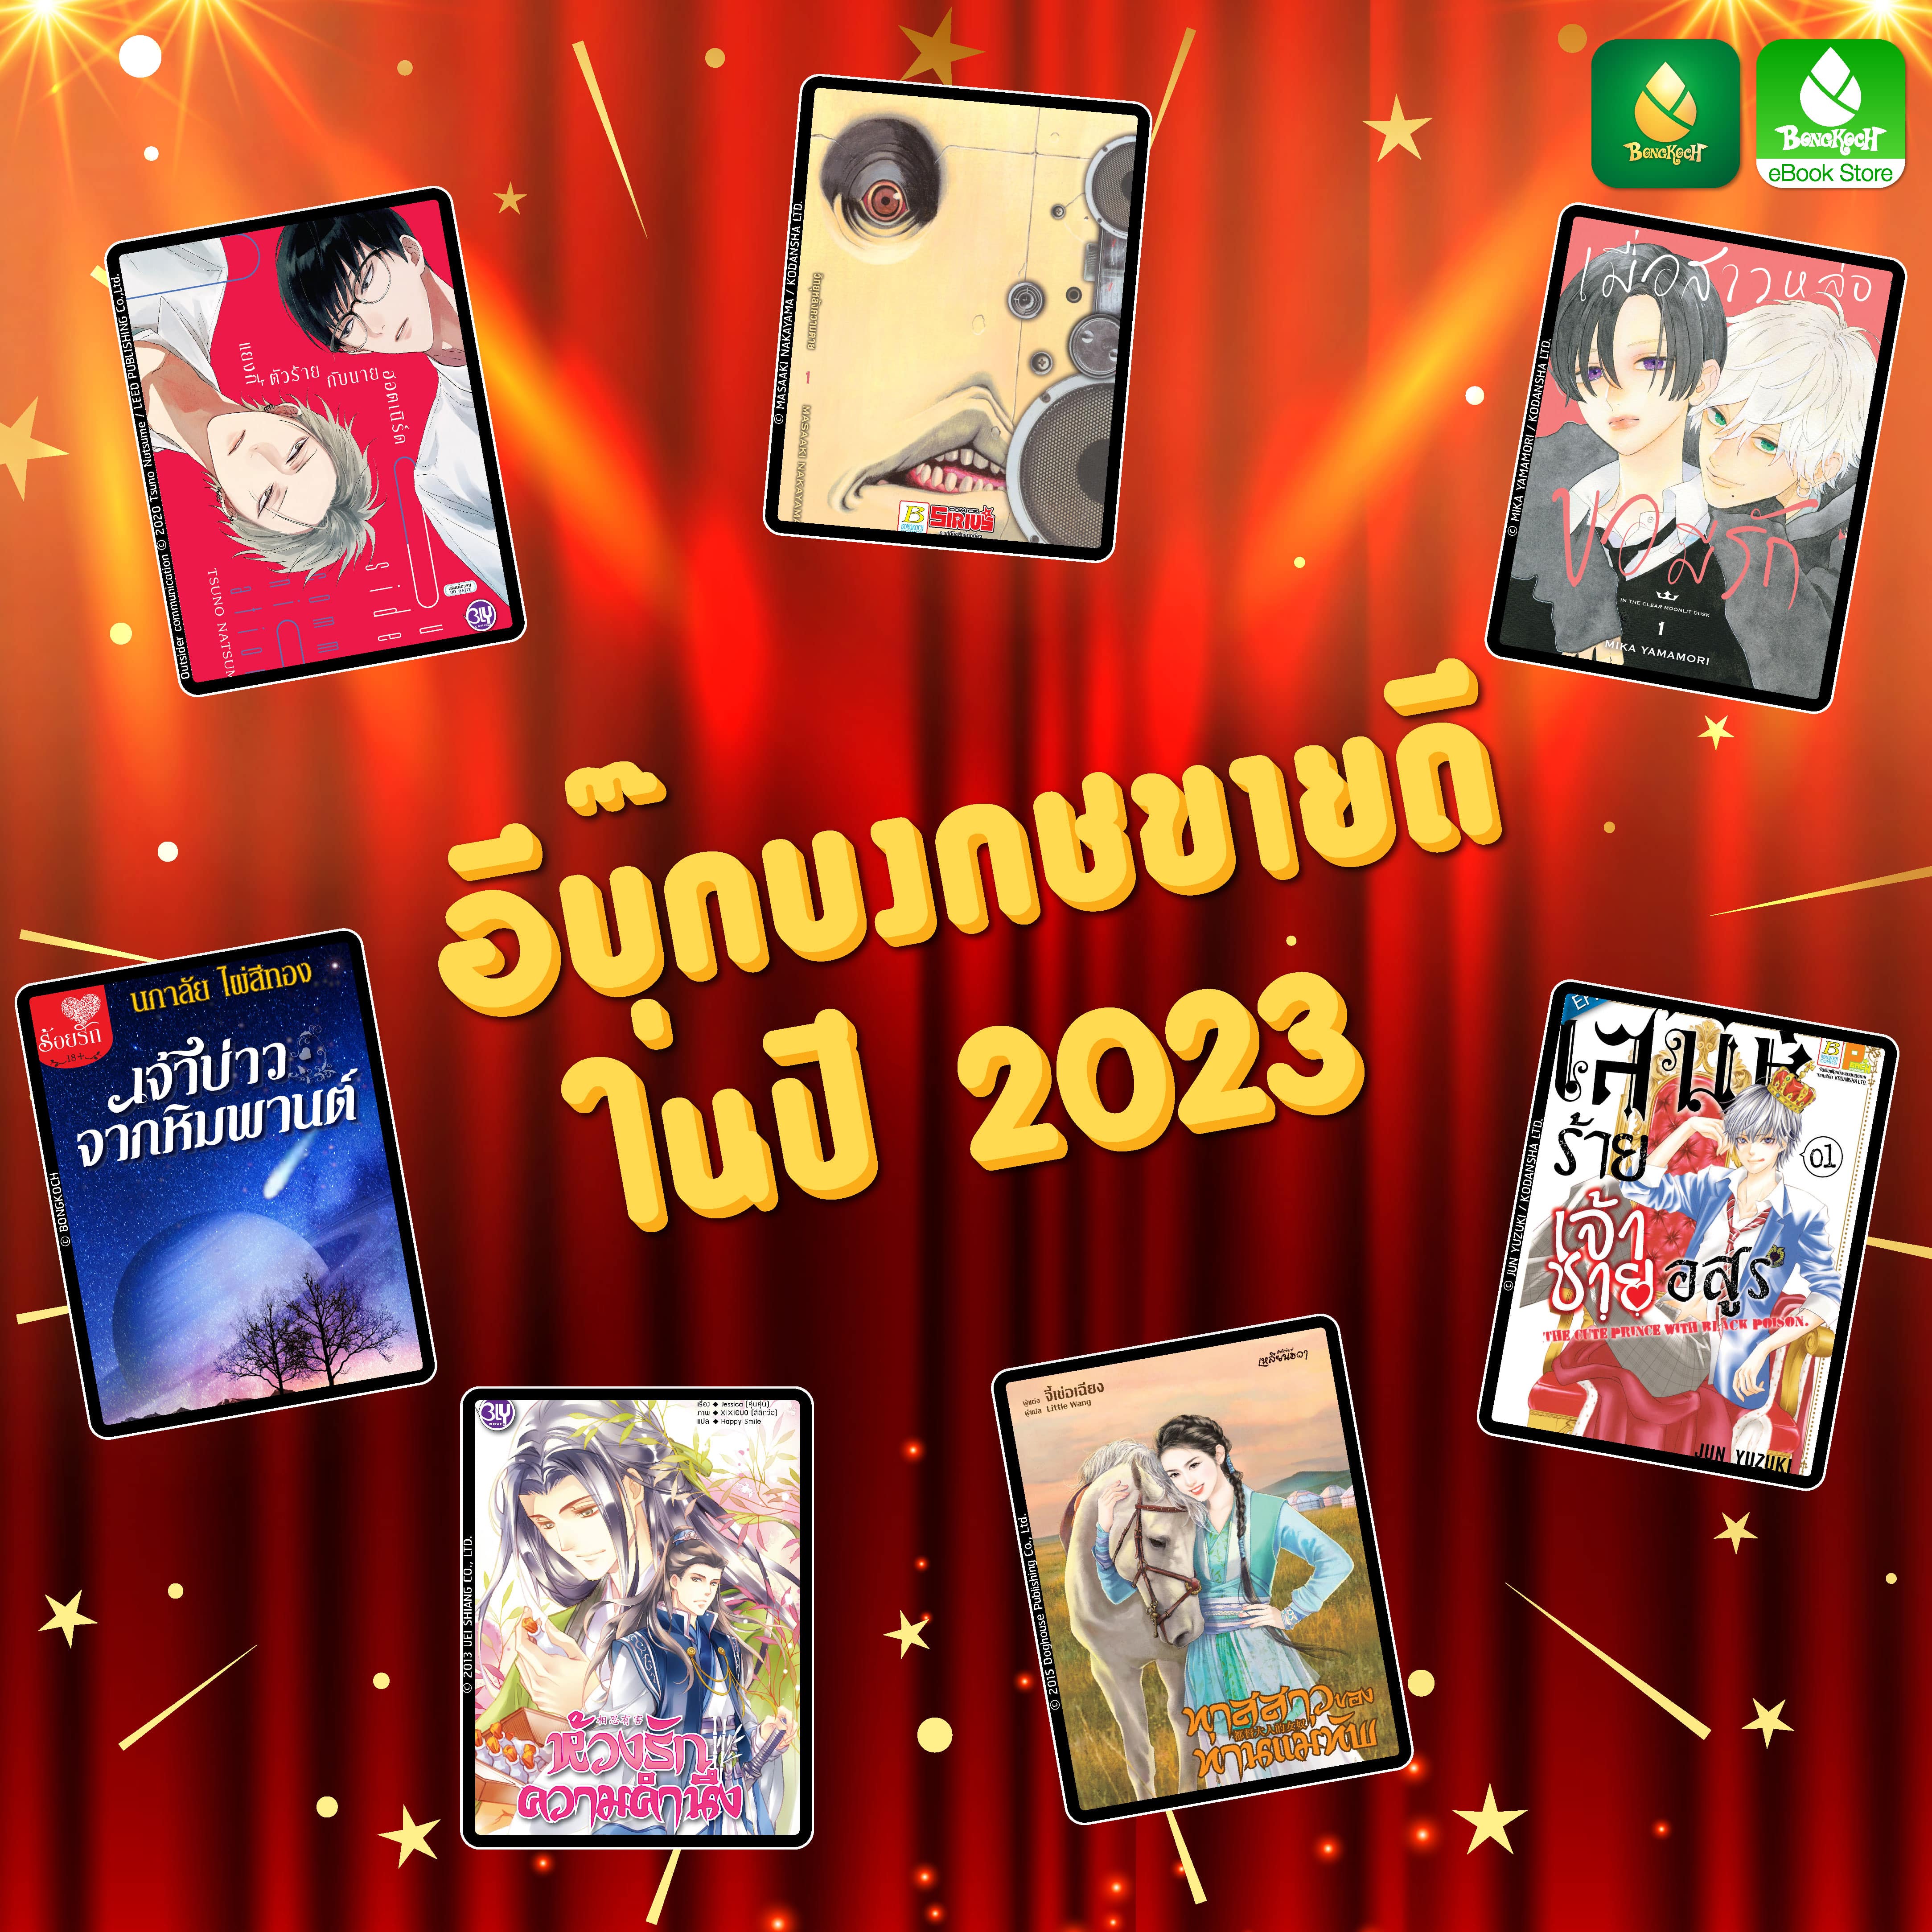 ✦ Bongkoch e-Book Awards 2023 อีบุ๊กบงกชขายดีประจำปี 2023 ✦